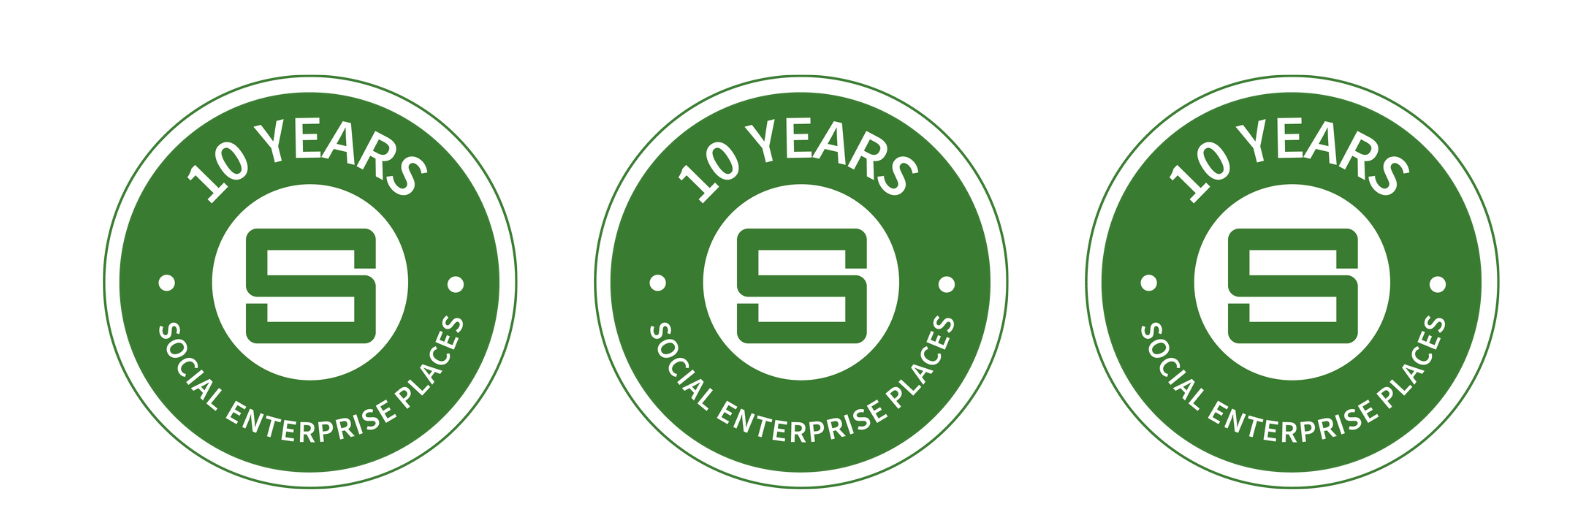 10 Years Social Enterprise Places